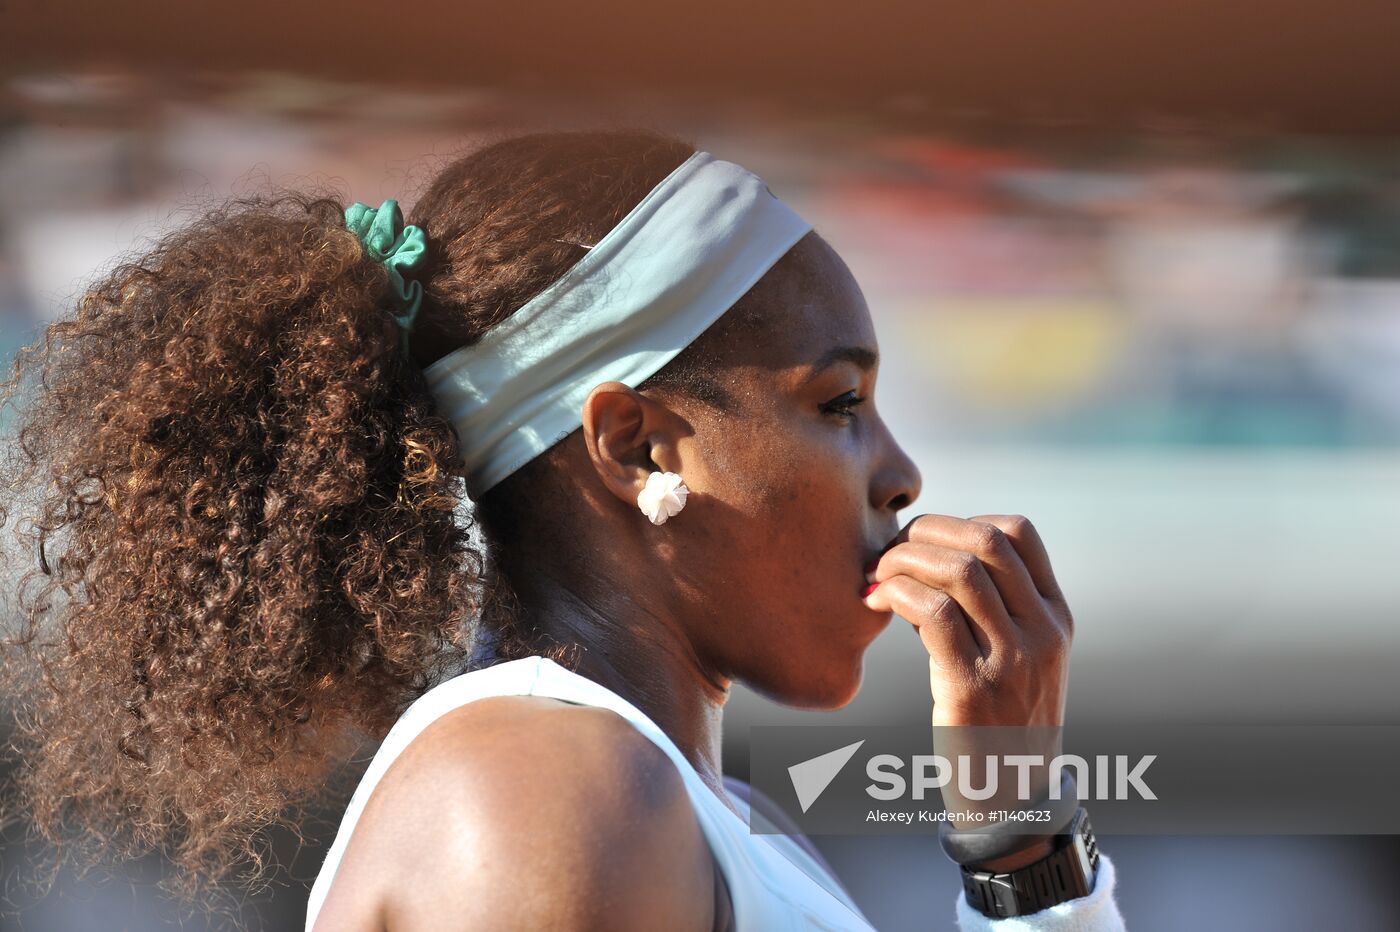 Tennis Roland Garros 2012. Third day